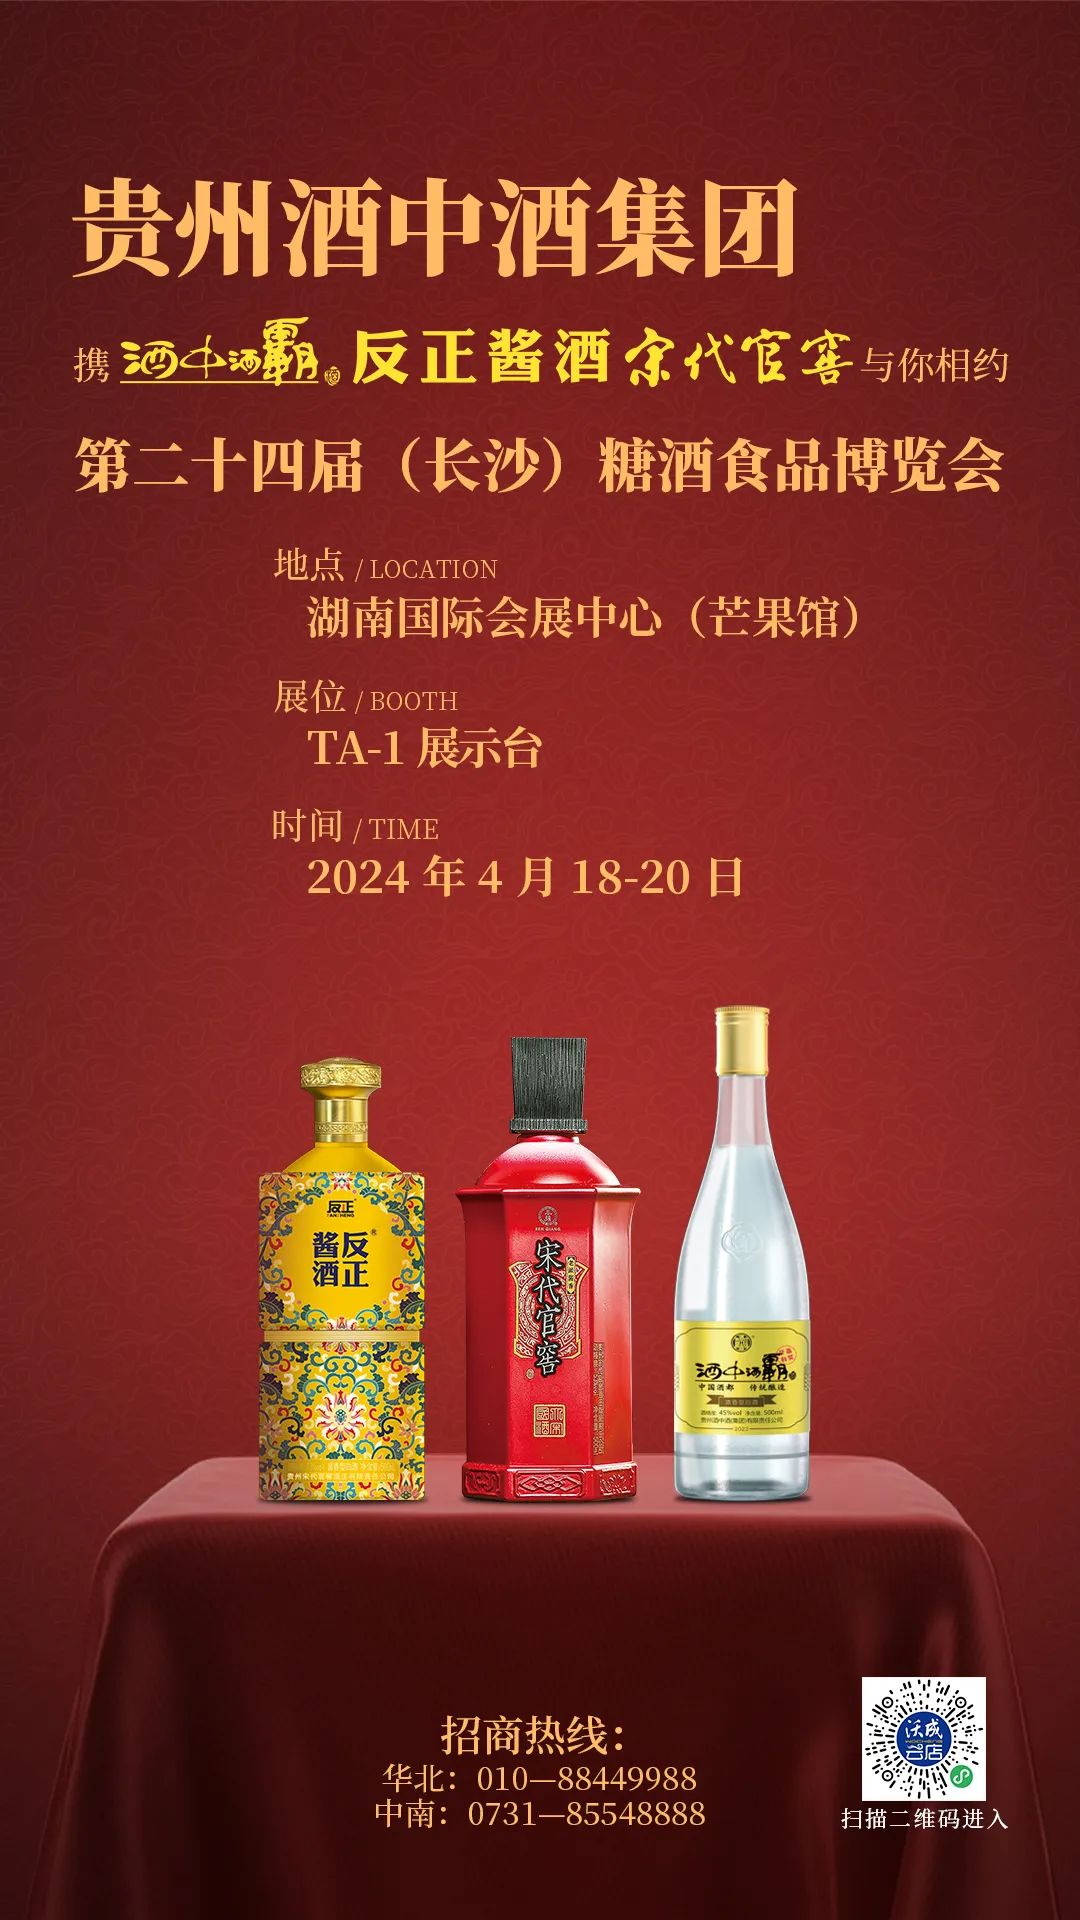 贵州酒中酒集团携宋代官窖、反正酱酒、酒中酒霸邀您参加第24届中部（长沙）糖酒食品博览会